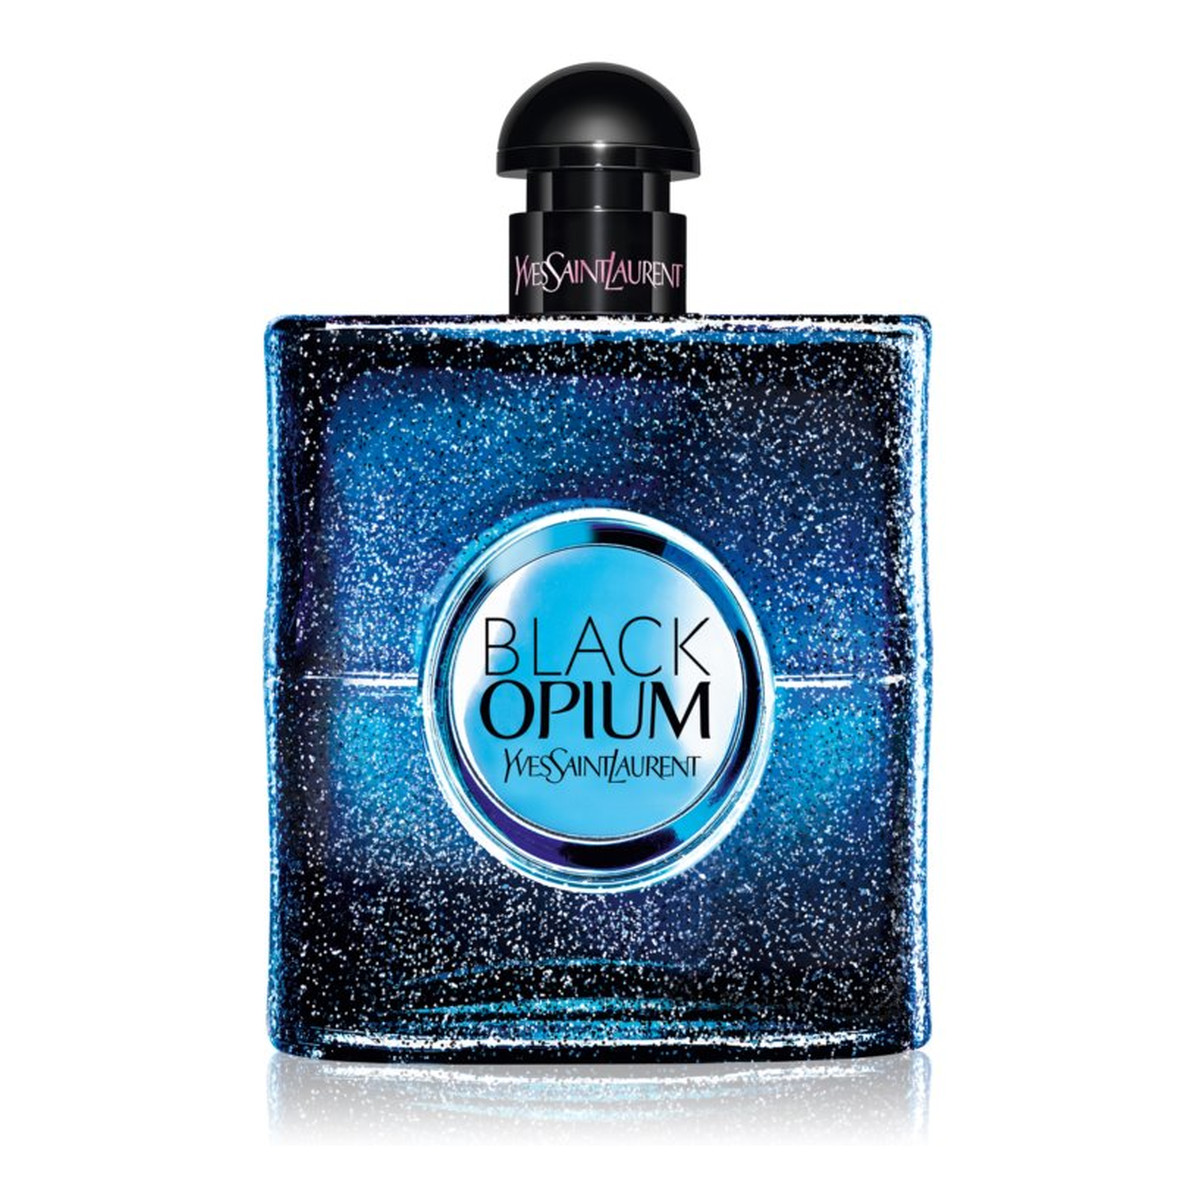 Yves Saint Laurent Black Opium Intense Woda Perfumowana 90ml